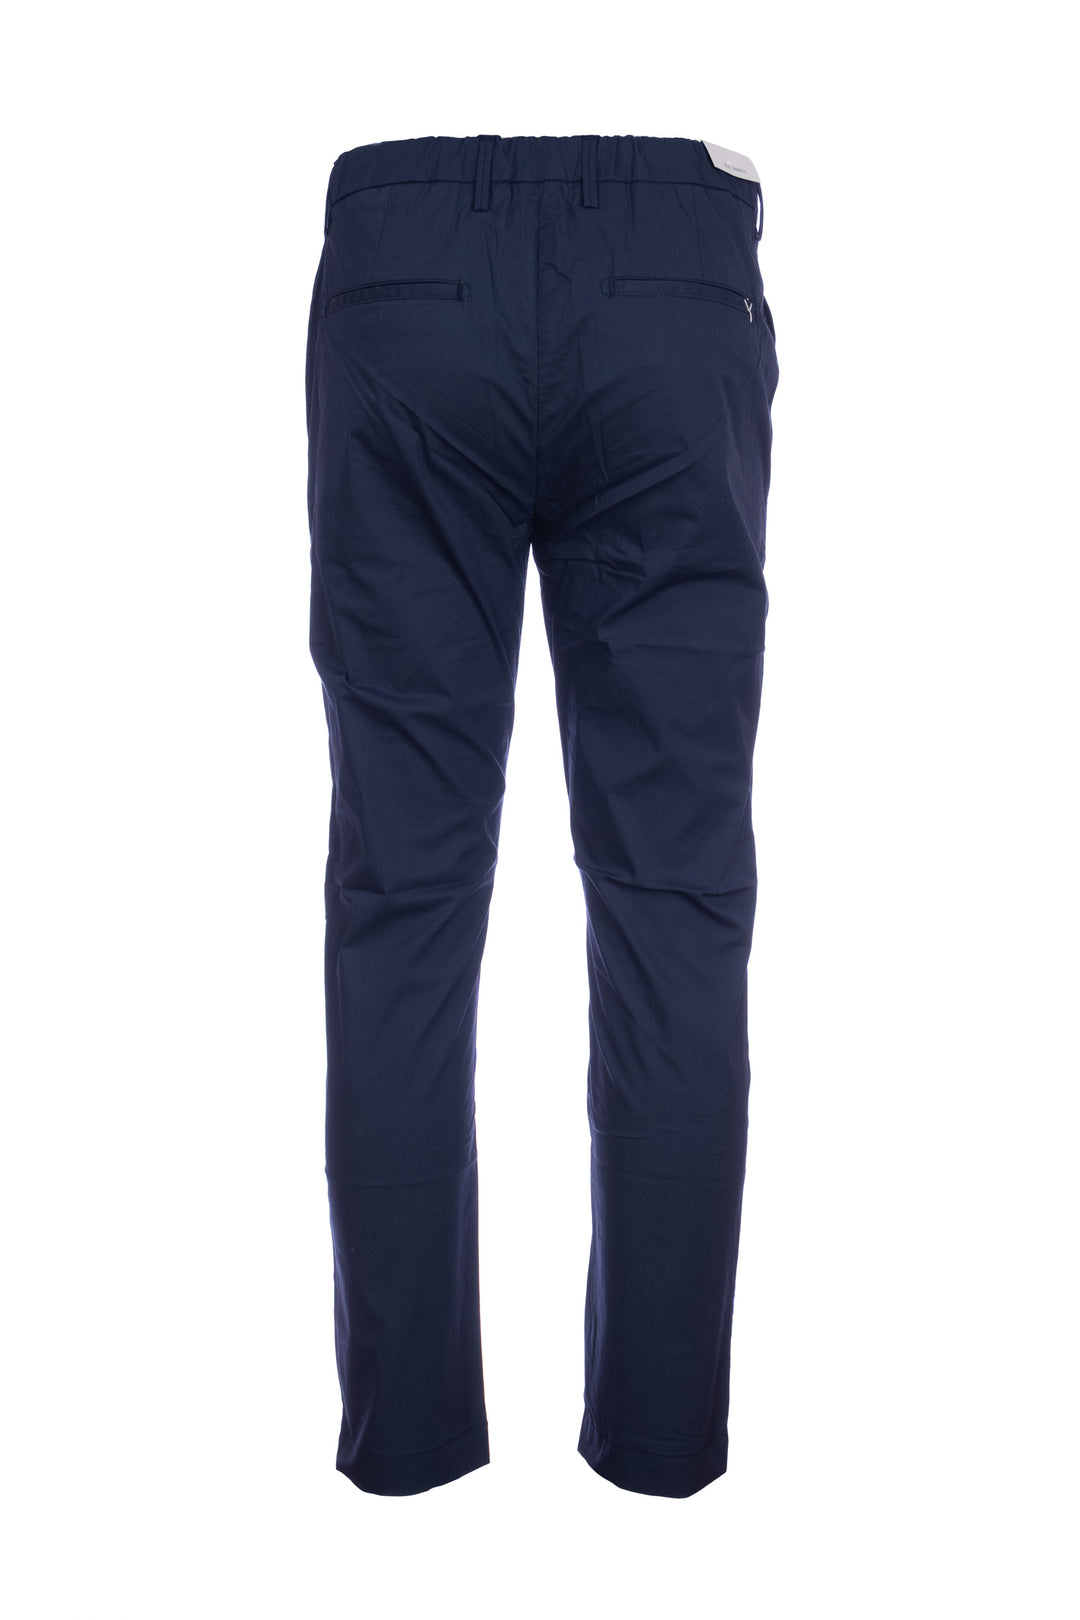 YAN SIMMON Pantalone blu navy in cotone elasticizzato con una pence - Mancinelli 1954